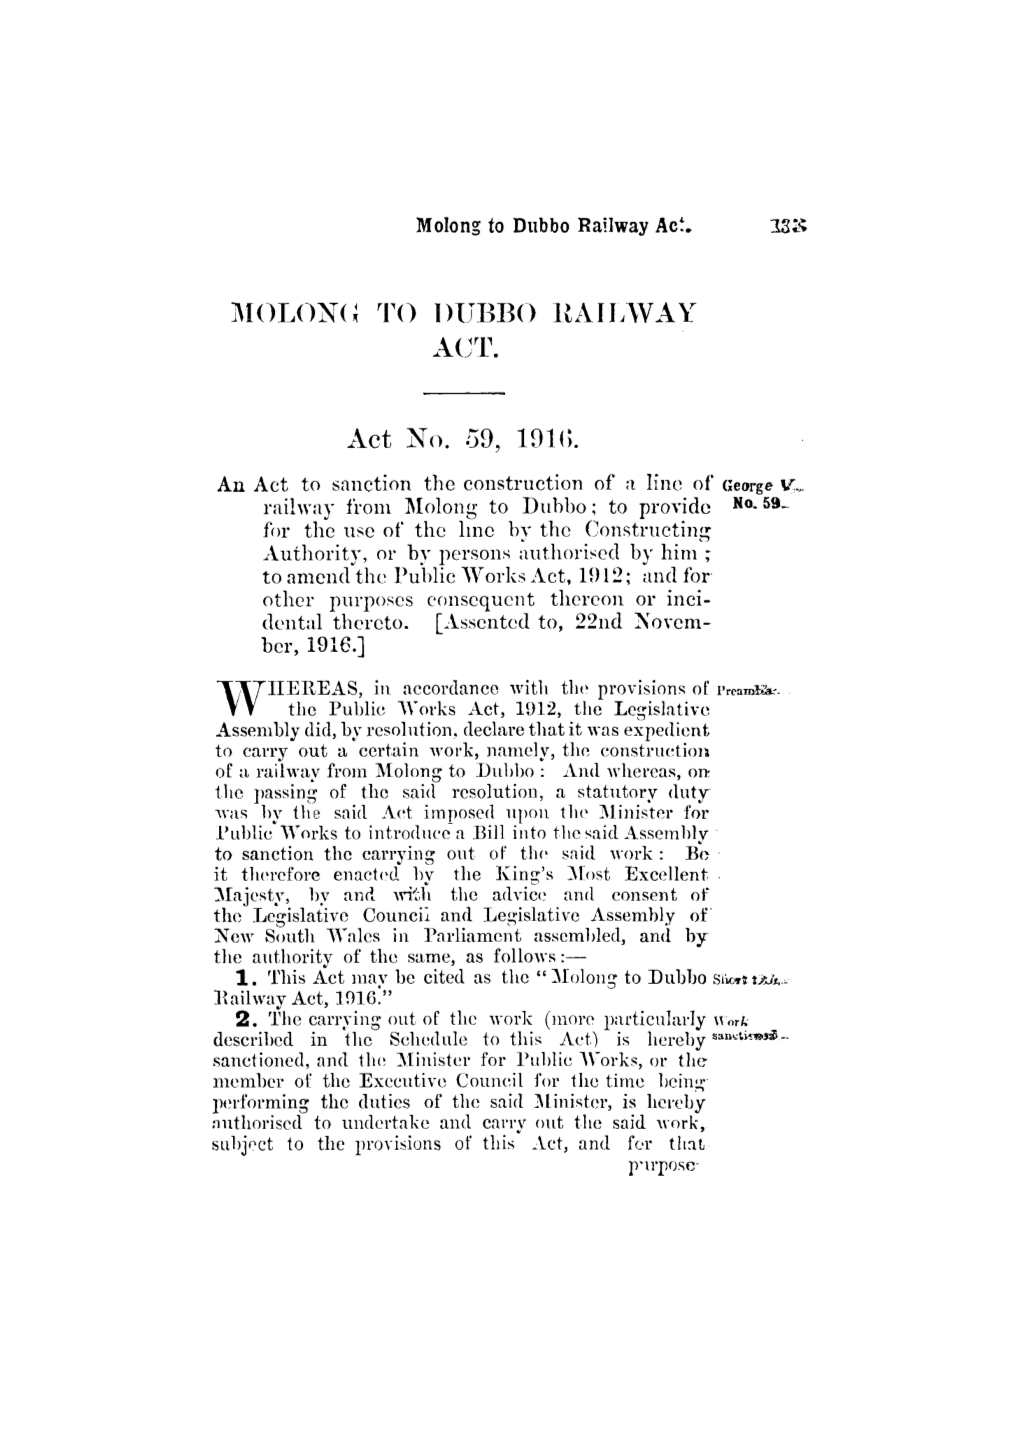 MOLONG to DUBBO RAILWAY ACT. Act No. 59, 1916